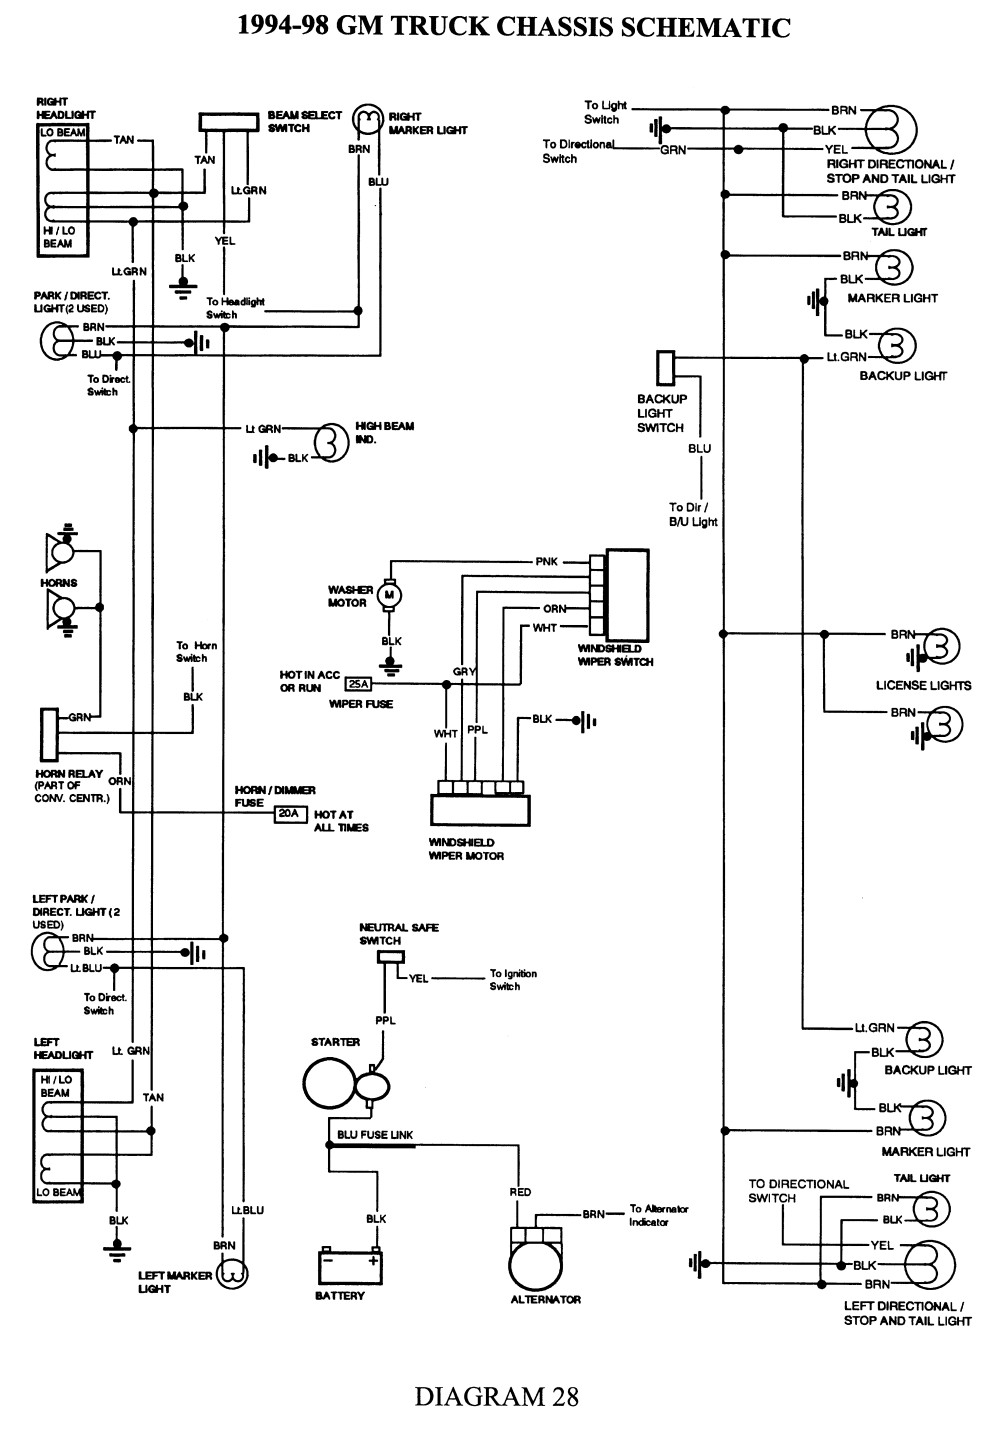 1994 c1500 wiring diagram wiring diagrams schematics traverse wiring diagram gm backup light wiring wiring diagrams